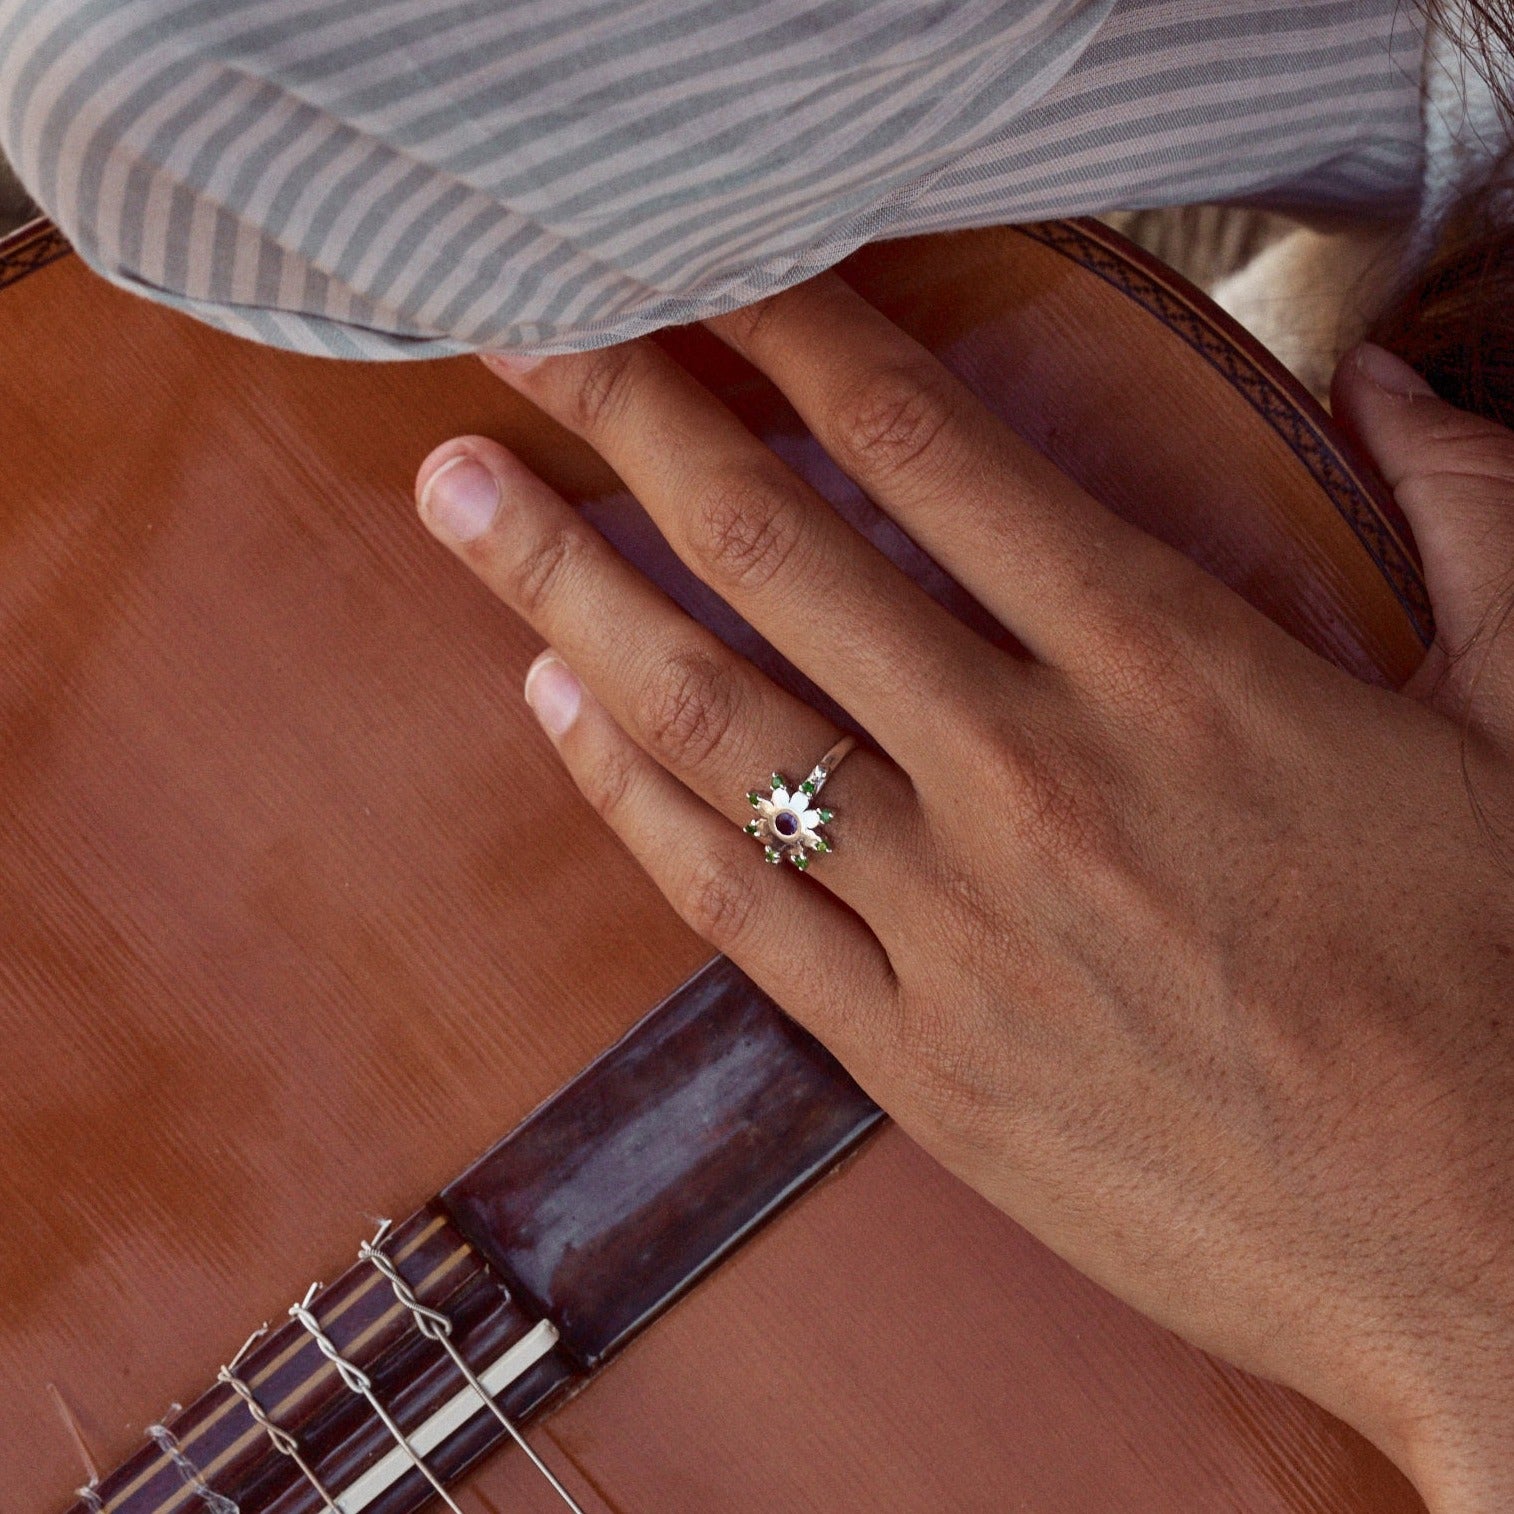 Mujer sujetando una guitarra y mostrando el anillo Yvette, con forma de flor estrellada. Fabricado con plata de ley, granates verdes y una amatista.